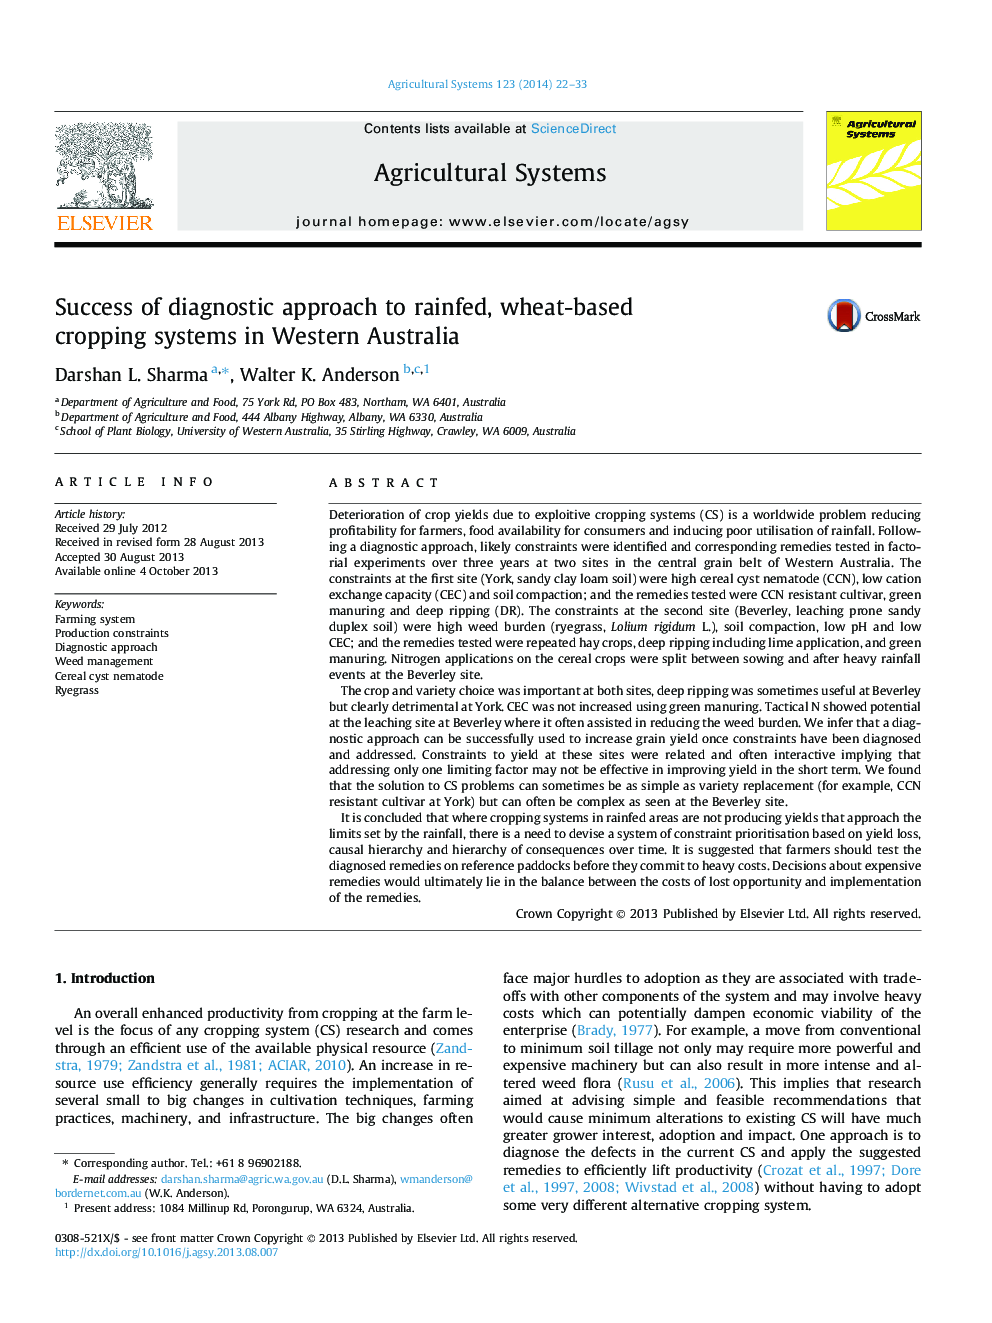 موفقیت رویکرد تشخیصی به سیستم های کشت محصول مبتنی بر گندم در استرالیا غربی 